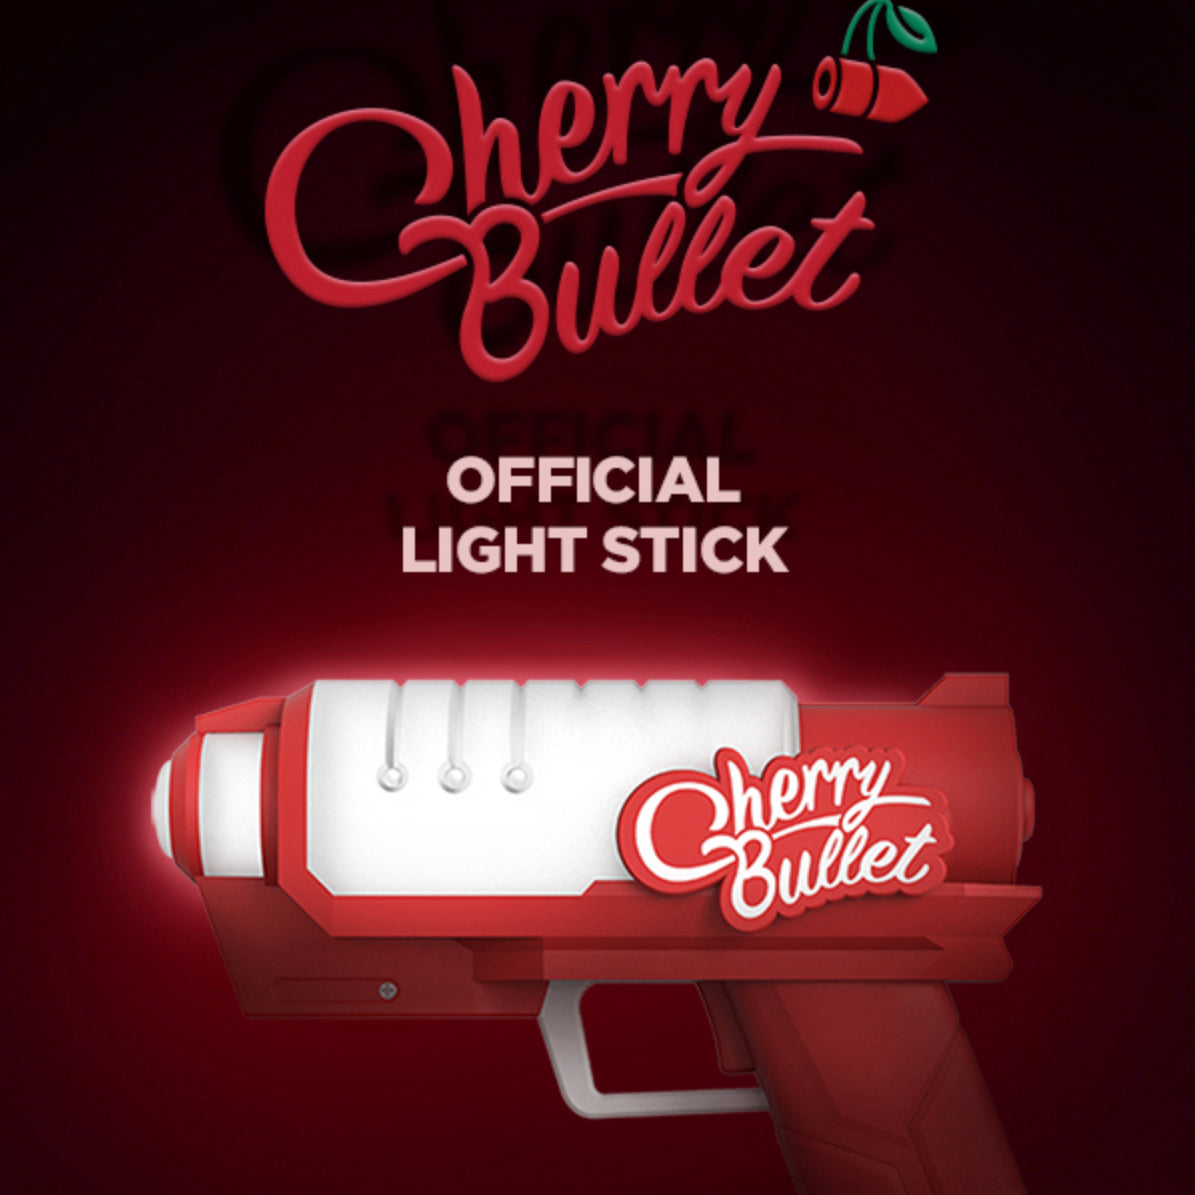 CHERRY BULLET OFFICIAL LIGHT STICK